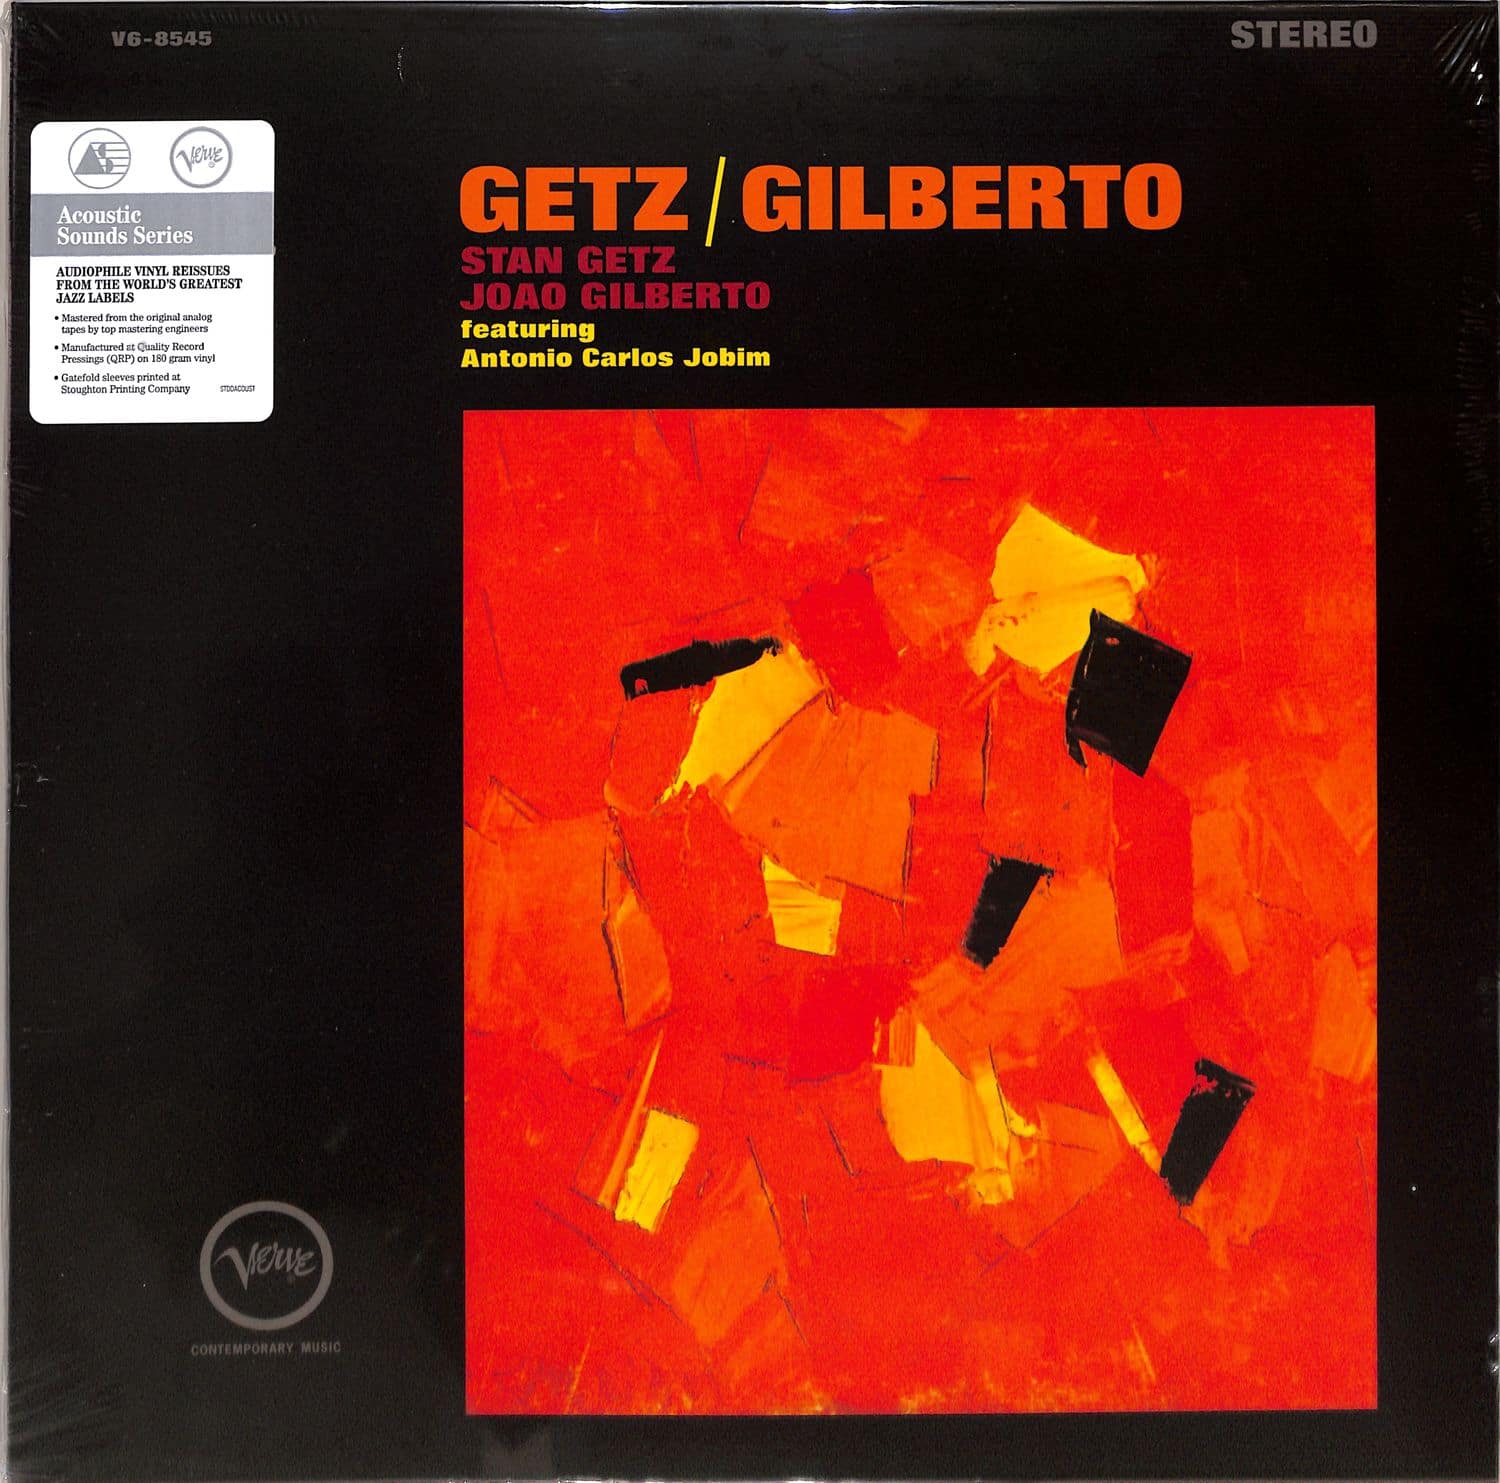 Stan Getz & Joao Gilberto - GETZ / GILBERTO 